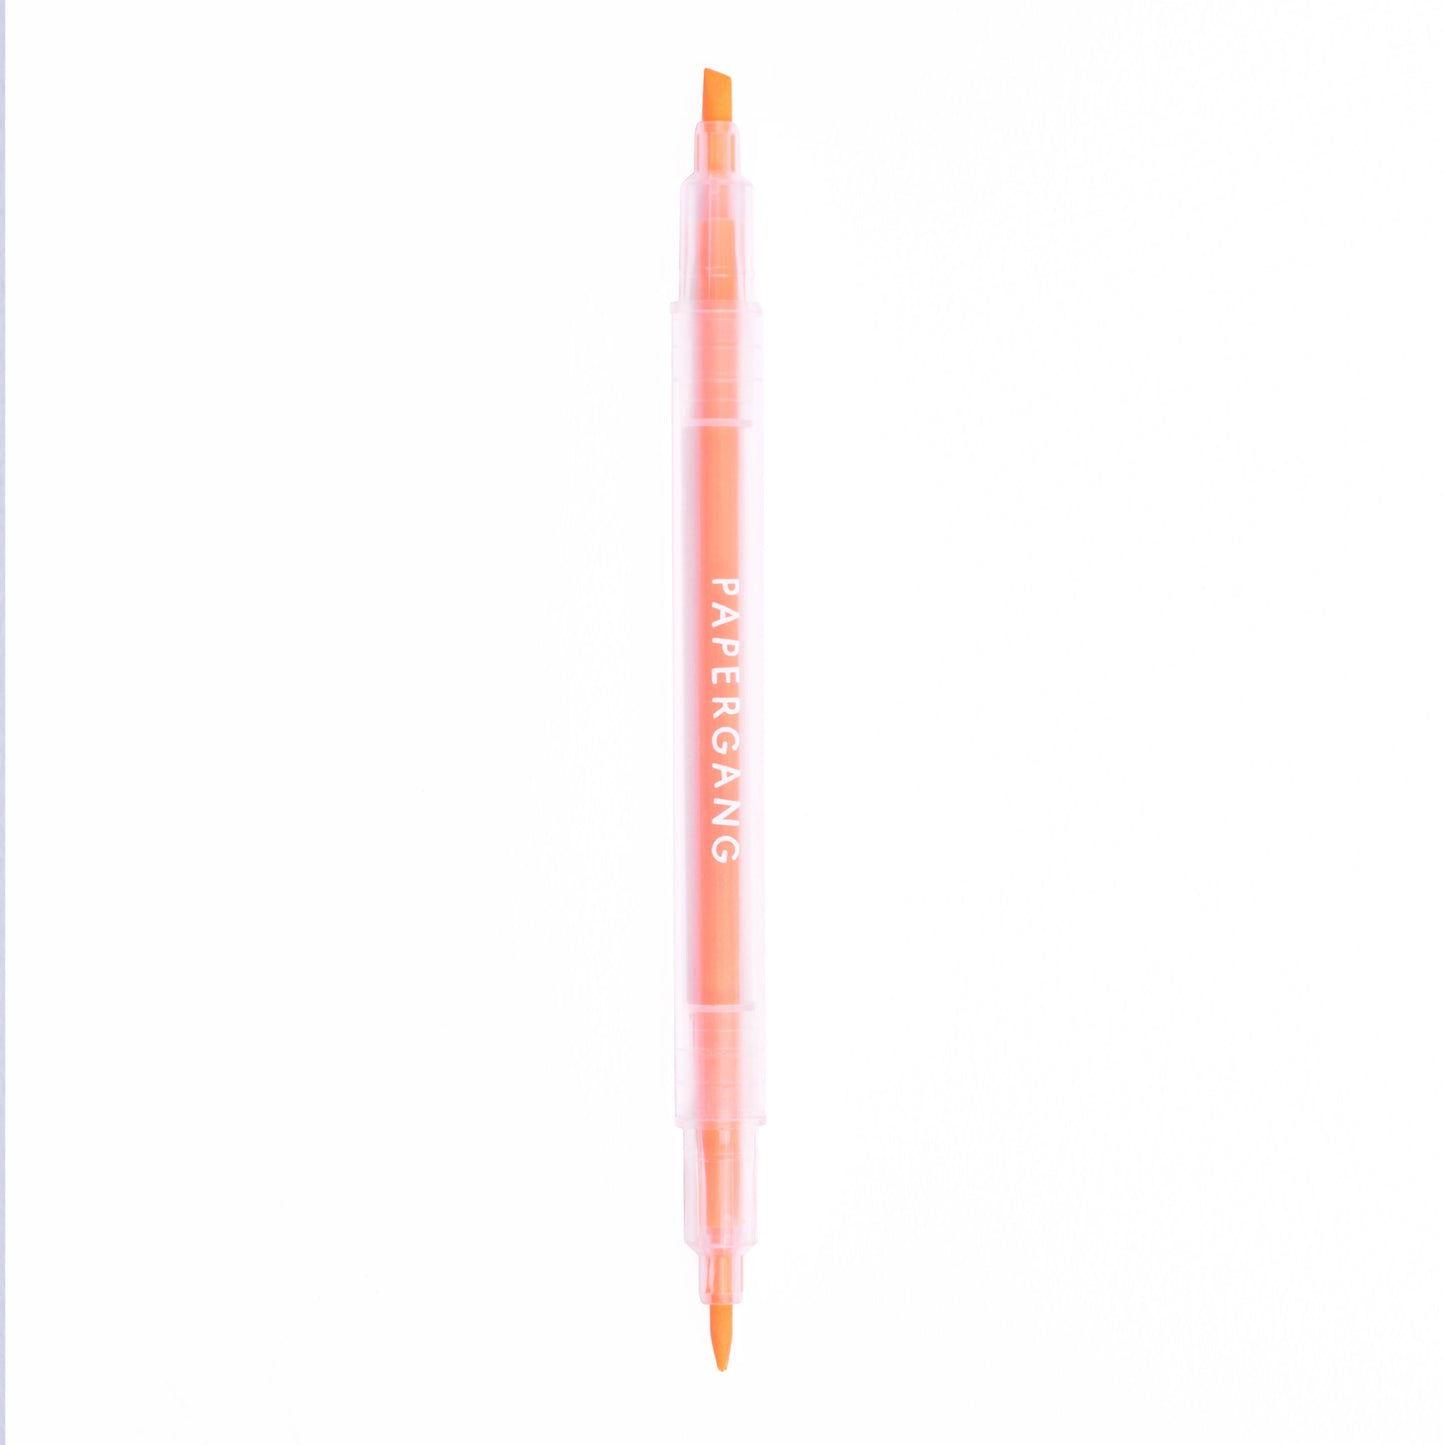 Papergang Orange Highlighter Pen